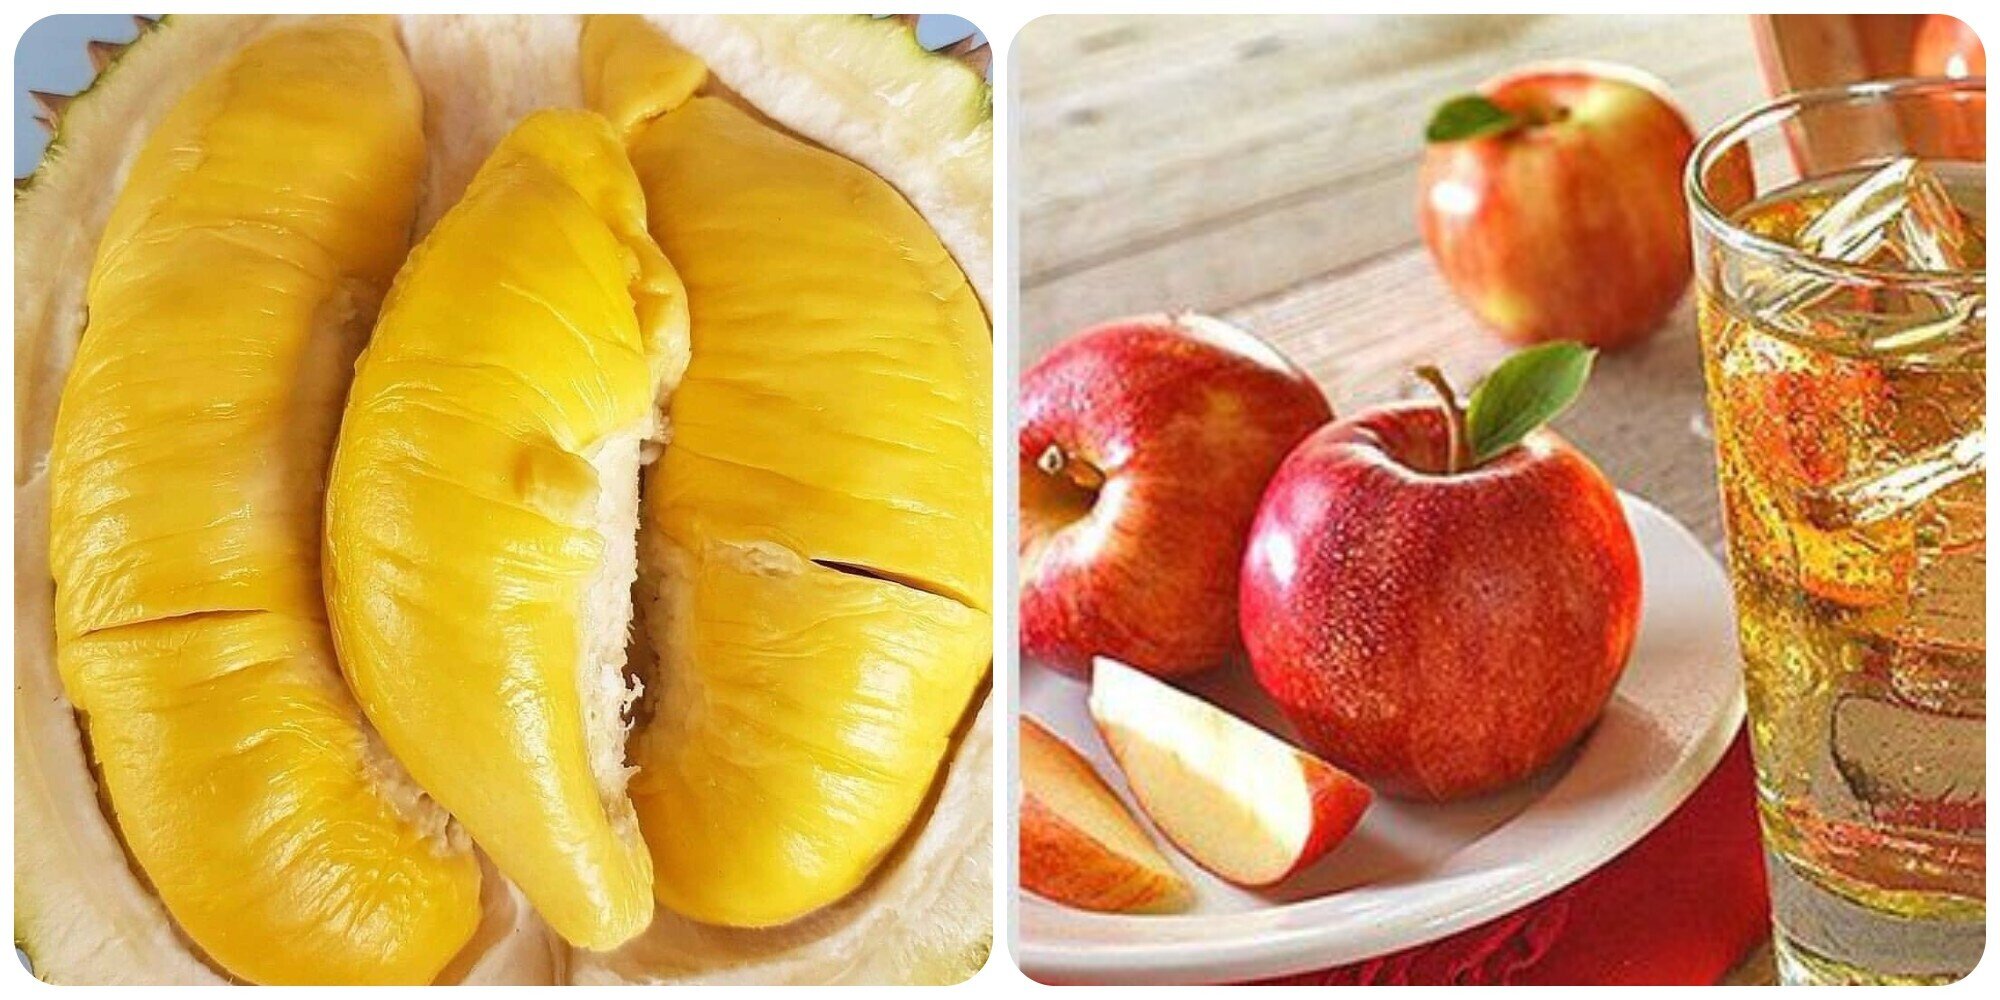 Một số loại hoa quả khi ăn có thể gây ra hơi thở có mùi cồn